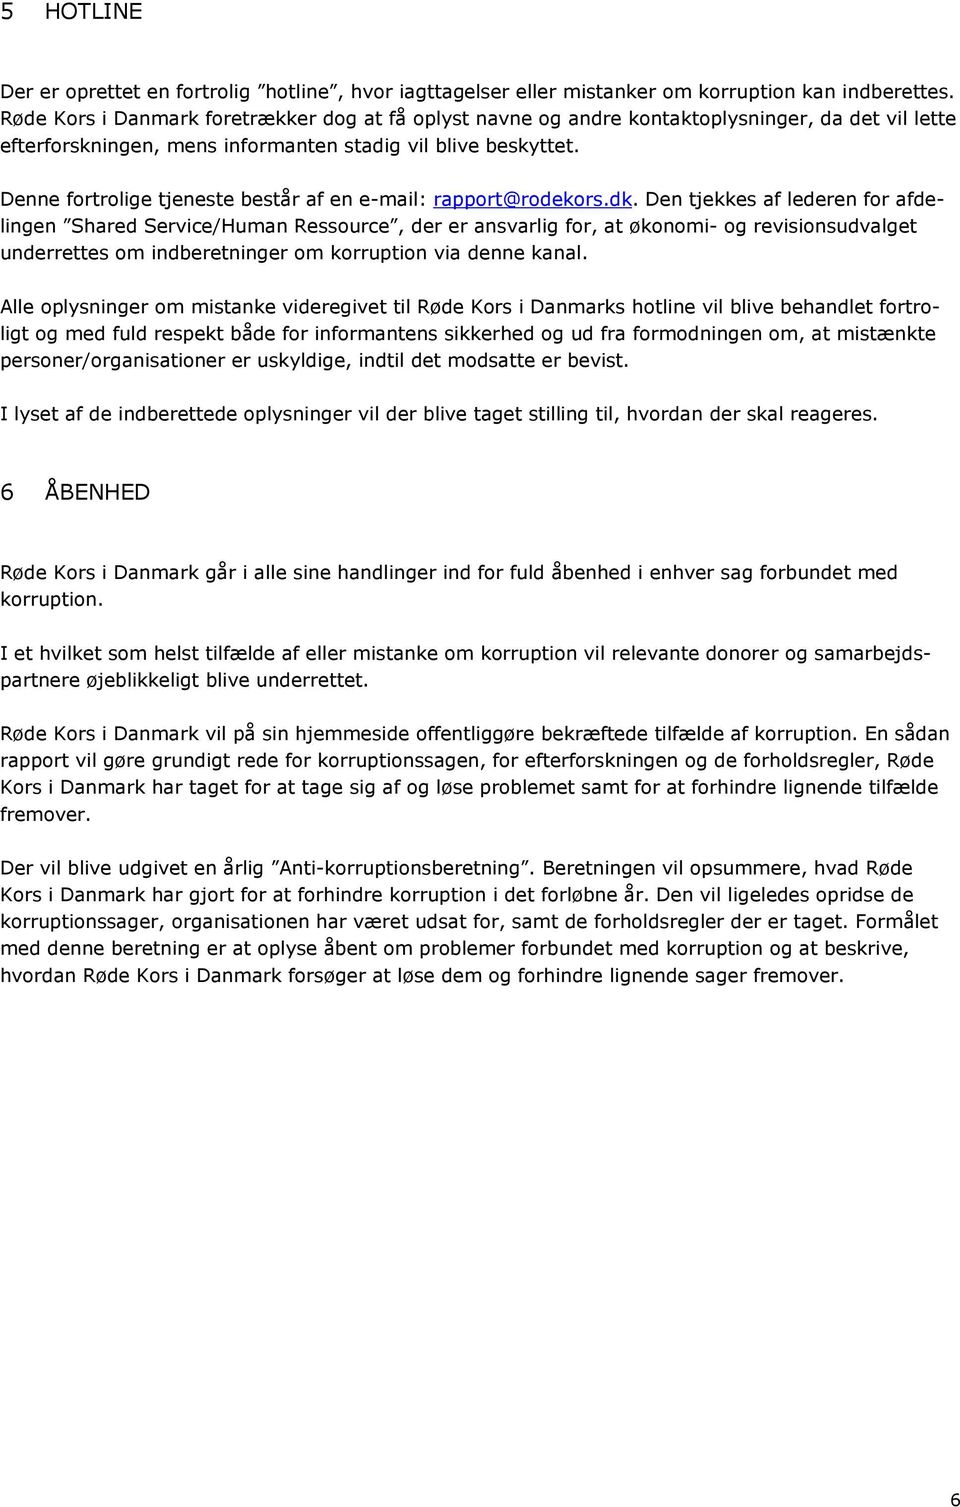 Denne fortrolige tjeneste består af en e-mail: rapport@rodekors.dk.